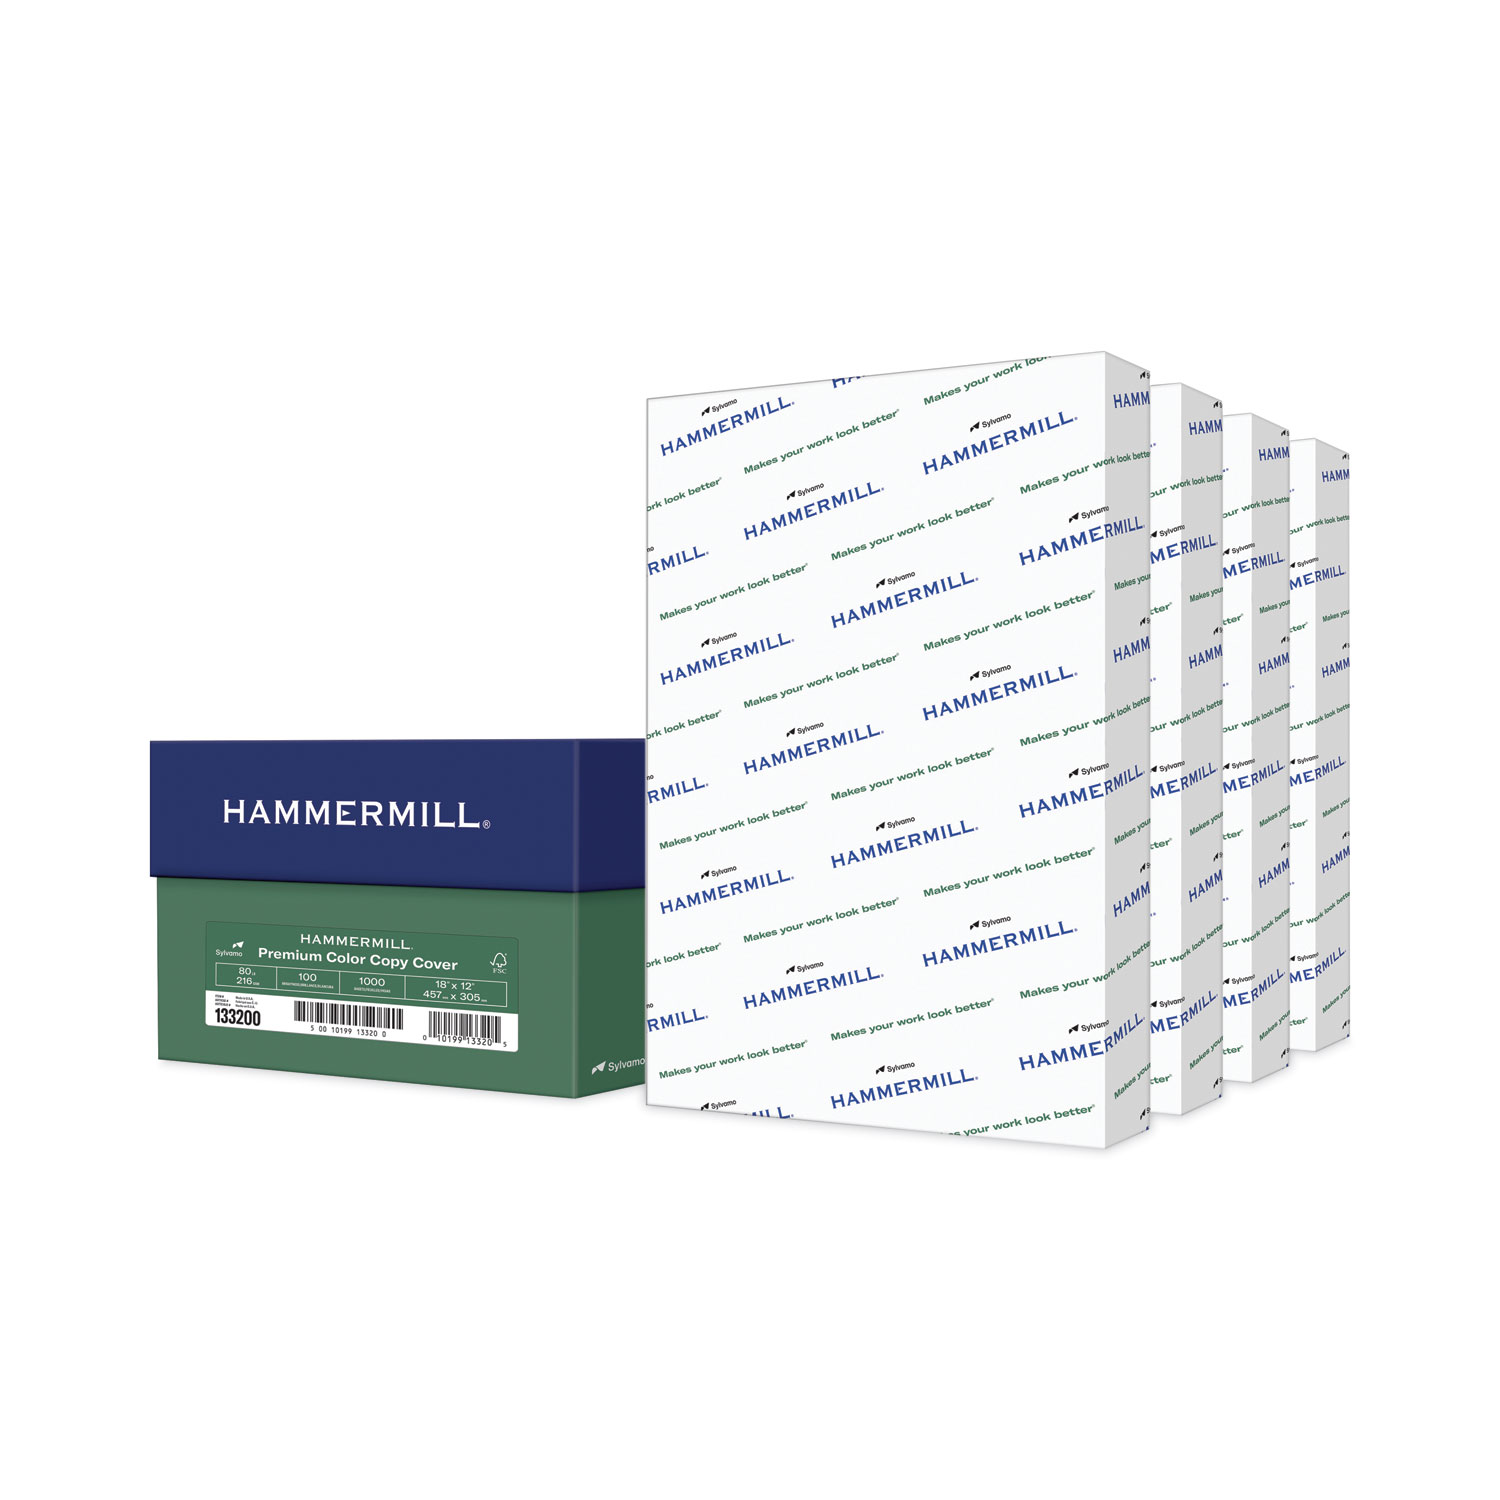 Hammermill Premium Color Copy Print Paper, 100 Bright, 28lb, 12 x 18, Photo White, 500/Ream